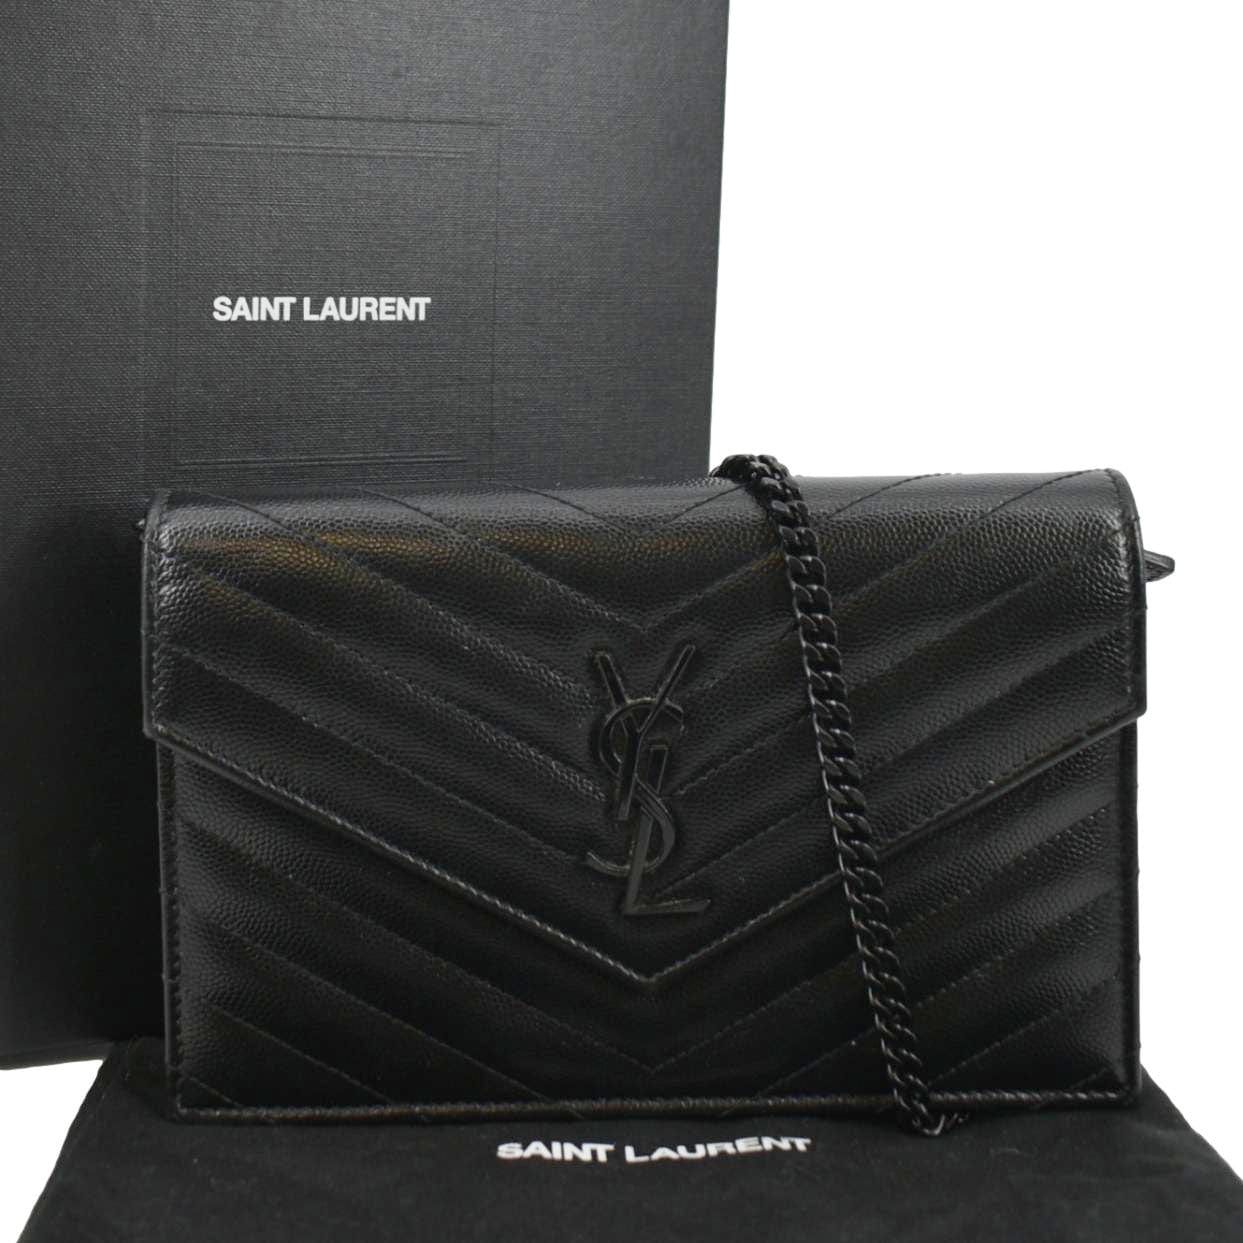 Authentic Yves Saint Laurent YSL Logo Shoulder bag color Black Leather  Women